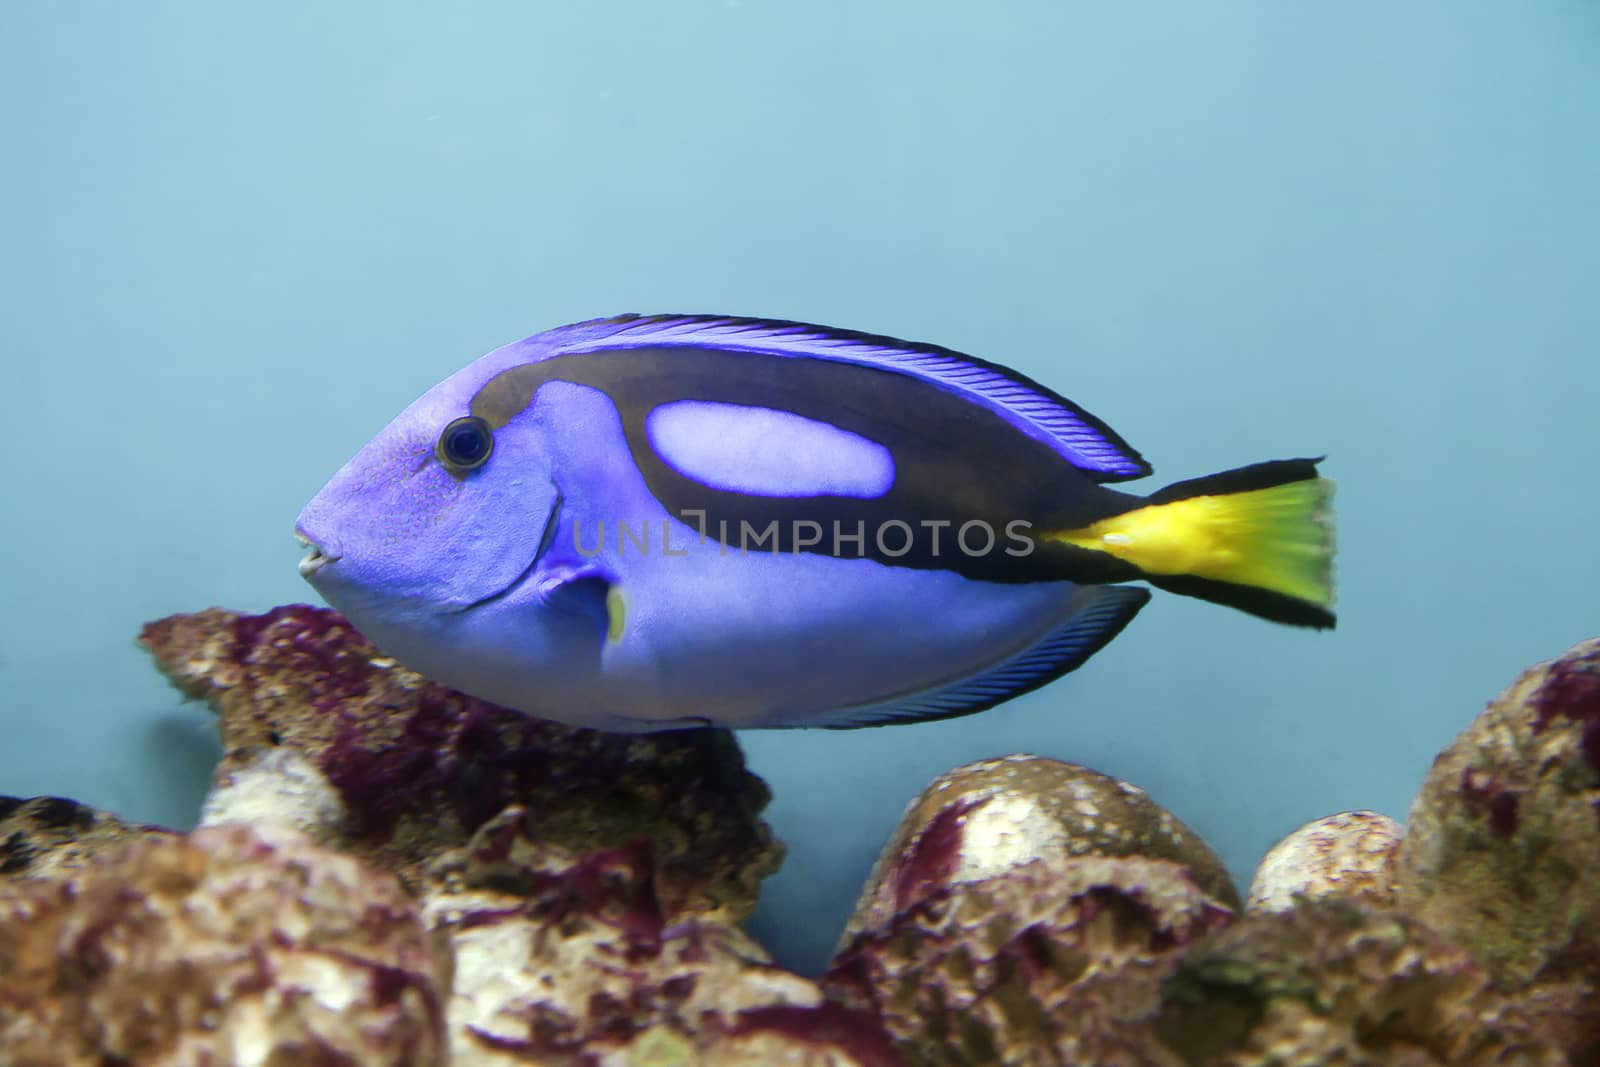 Blue surgeonfish - Paracanthurus hepatus - in an aquarium